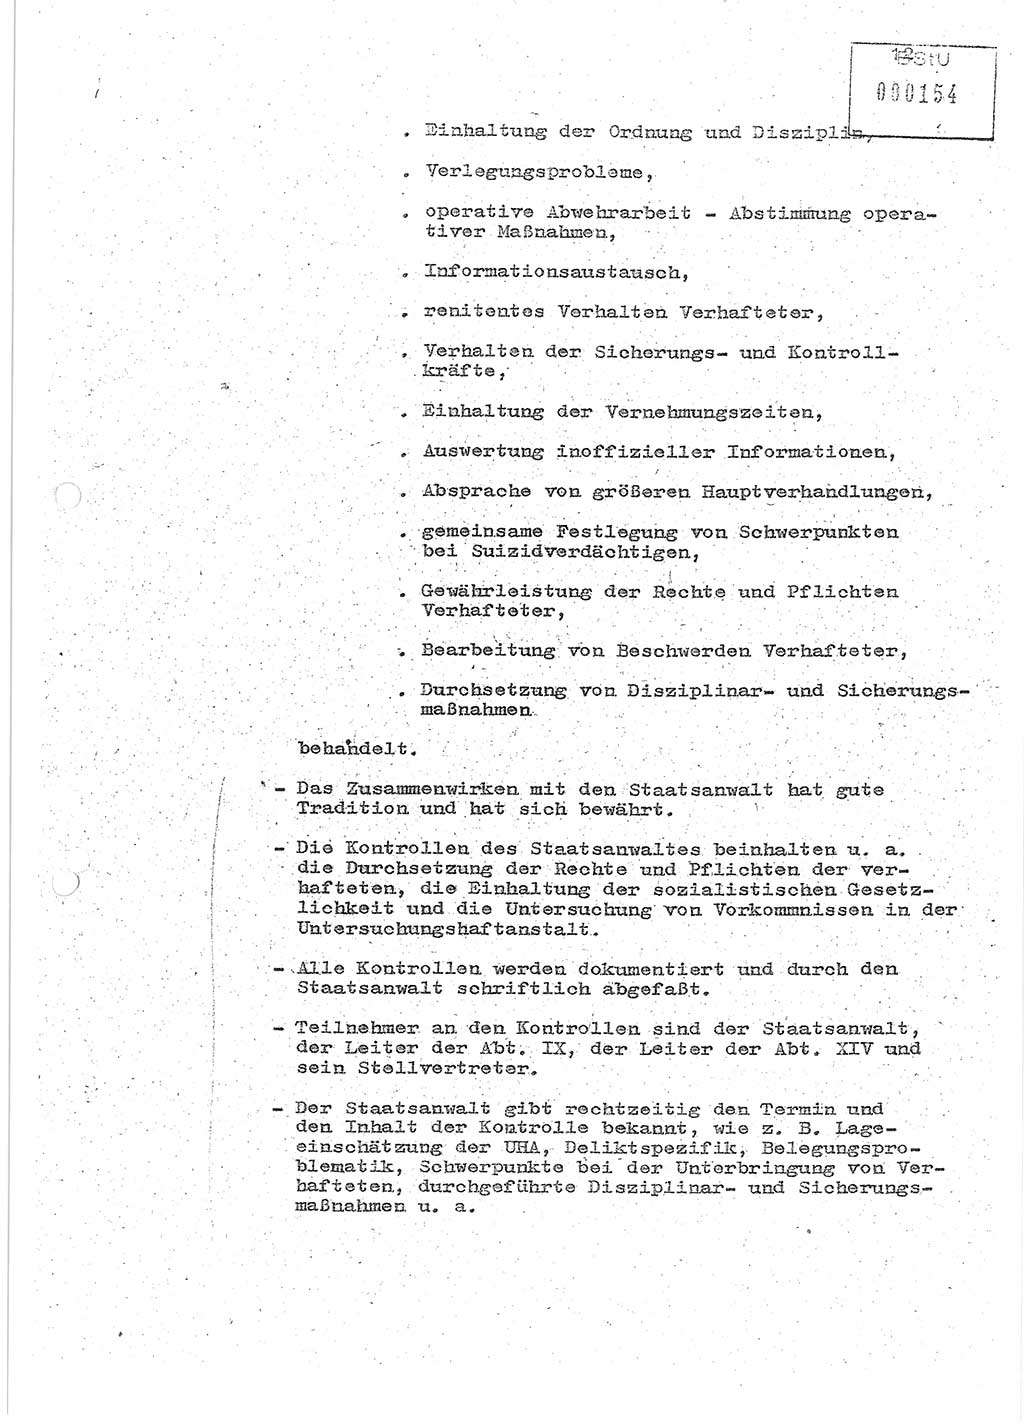 Protokoll zur zentralen Dienstkonferenz der Linie (Abteilung) ⅩⅣ des MfS [Ministerium für Staatssicherheit, Deutsche Demokratische Republik (DDR)] am 5.3./6.3.1986 in der Abteilung (Abt.) XIV des MfS Berlin, Abteilung XIV, Berlin 5.3./6.3.1986, Seite 12 (Prot. Di.-Konf. Abt. ⅩⅣ MfS DDR Bln. 1986, S. 12)